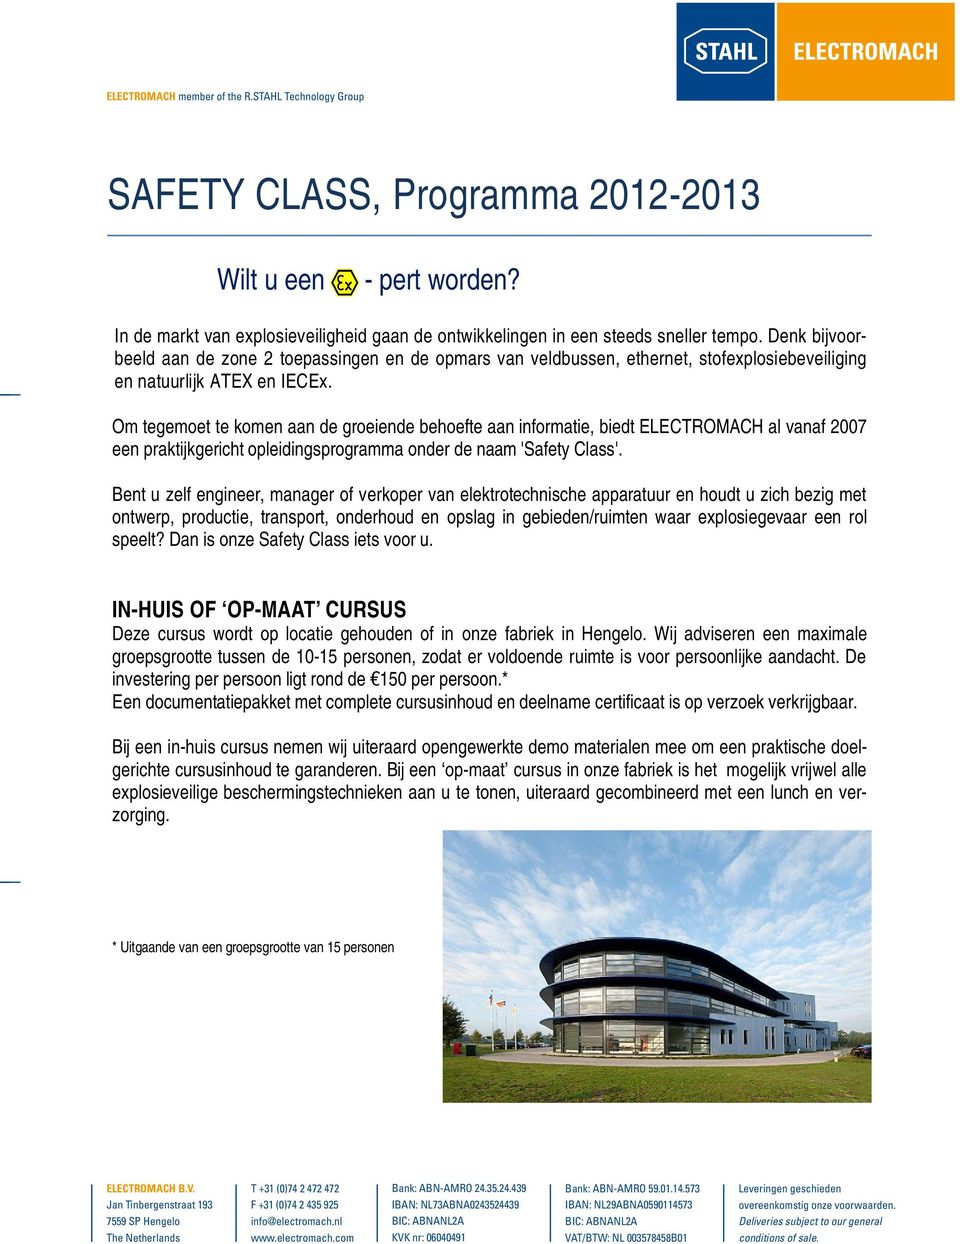 Om tegemoet te komen aan de groeiende behoefte aan informatie, biedt ELECTROMACH al vanaf 2007 een praktijkgericht opleidingsprogramma onder de naam 'Safety Class'.